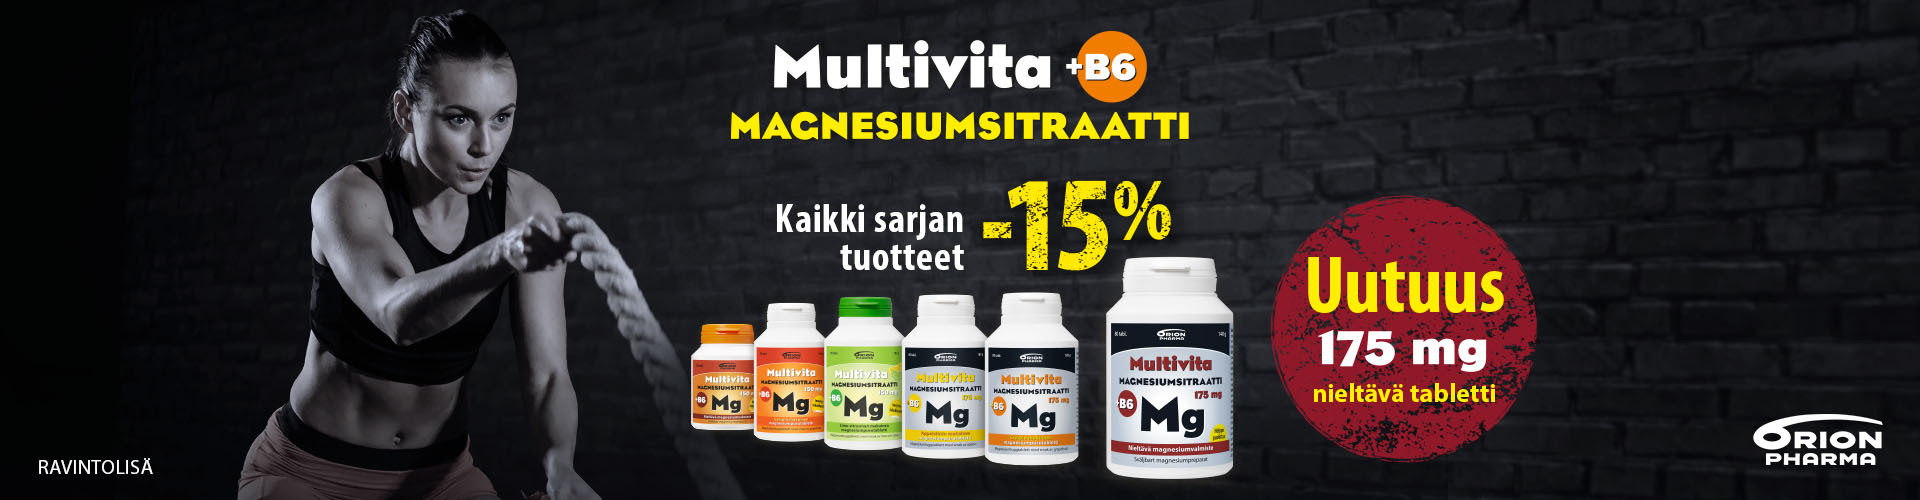 Magnesiumsitraatti_tarjous